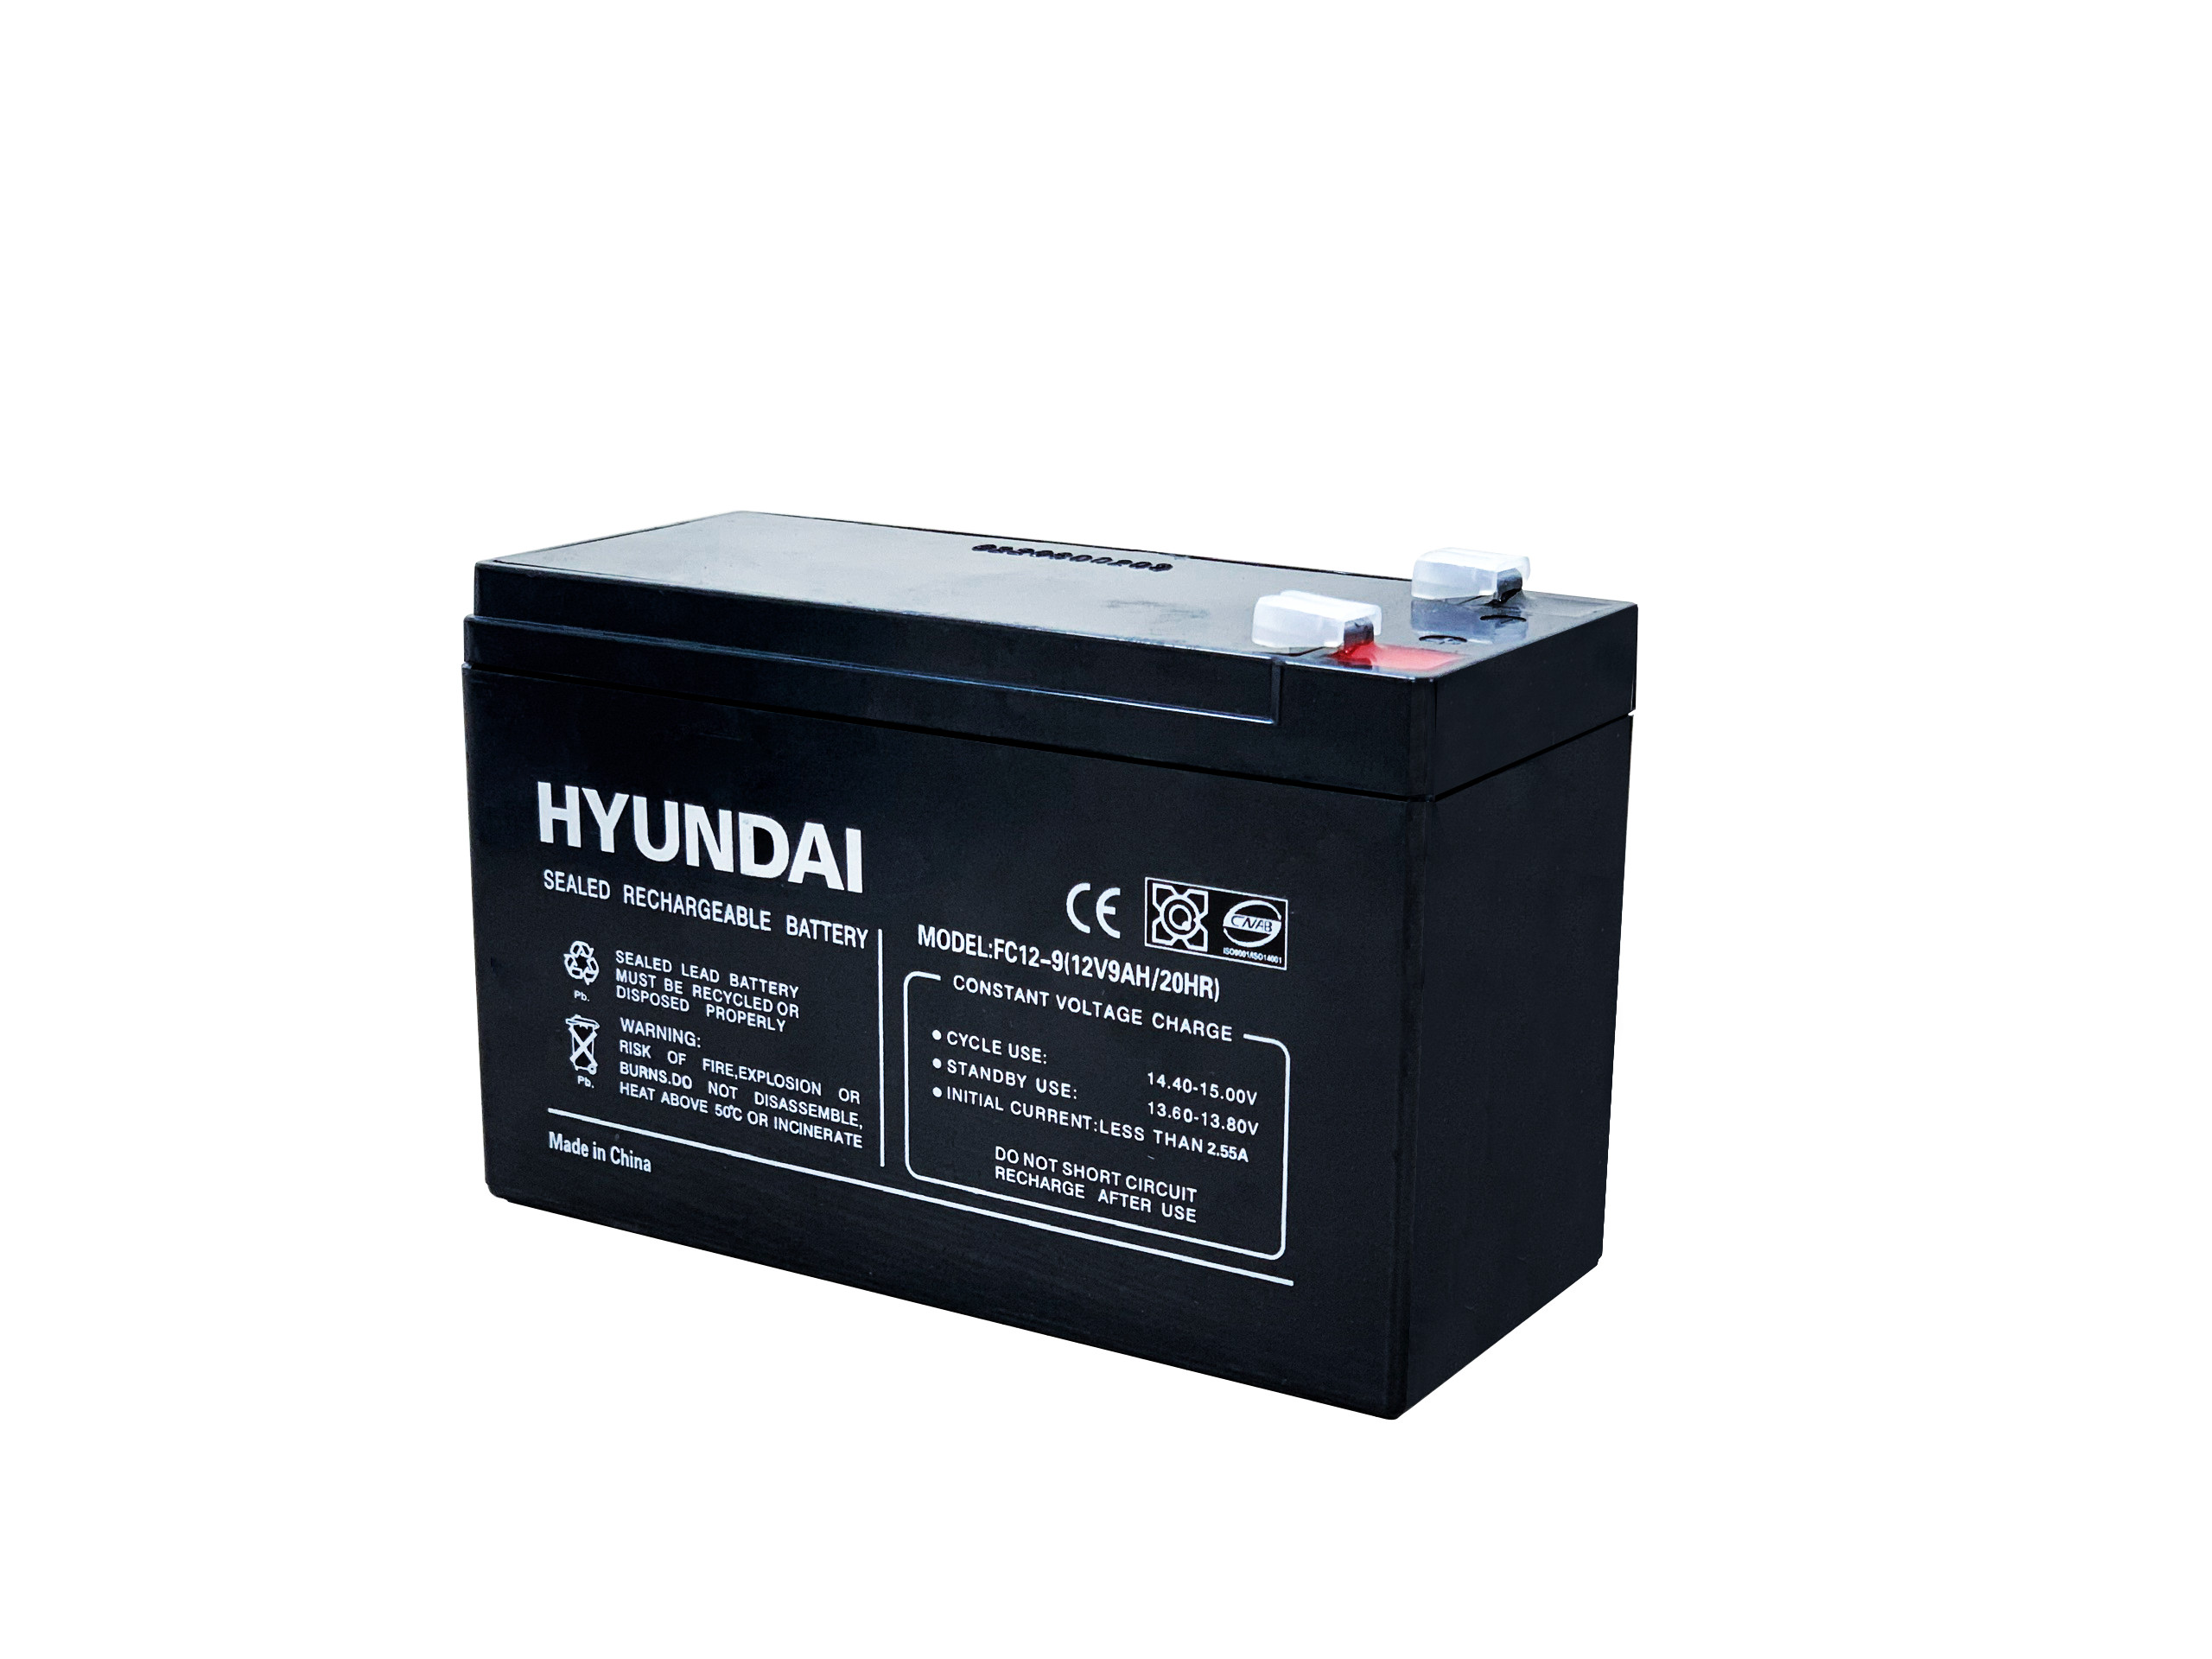 Hyundai thương hiệu ắc quy bộ lưu điện phổ biến